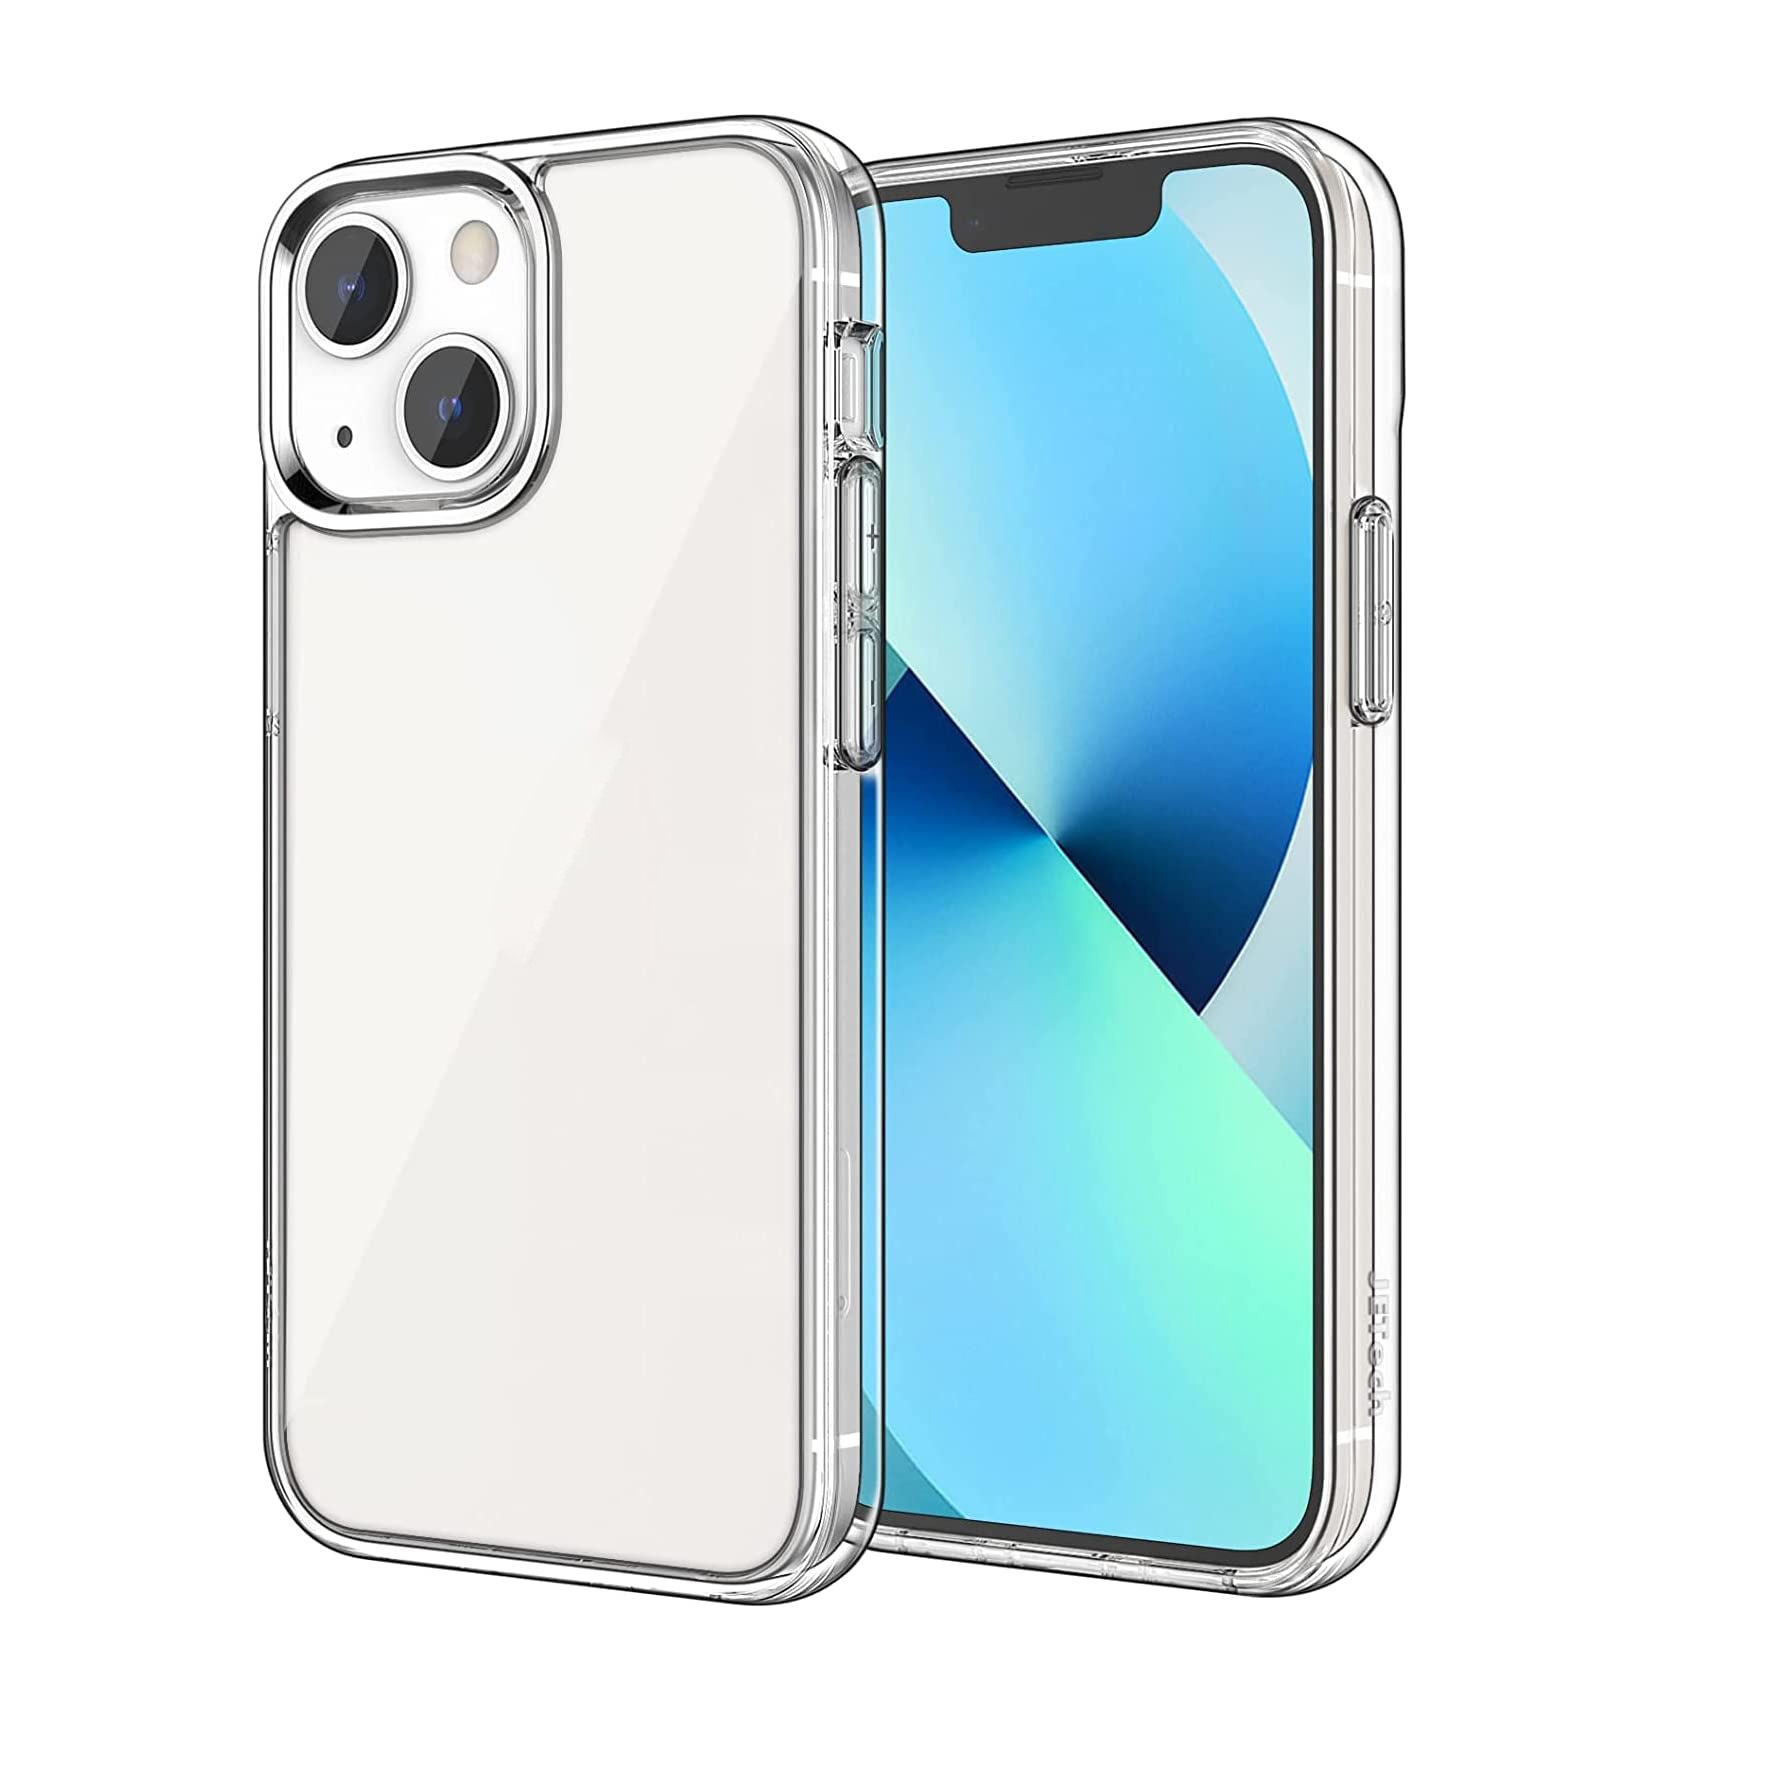 Ốp lưng chống sốc trong suốt cho iPhone 13 (6.1 inch) hiệu Rock Space tective Case siêu mỏng 1.5mm độ trong tuyệt đối, chống trầy xước, chống ố vàng, tản nhiệt tốt - hàng nhập khẩu